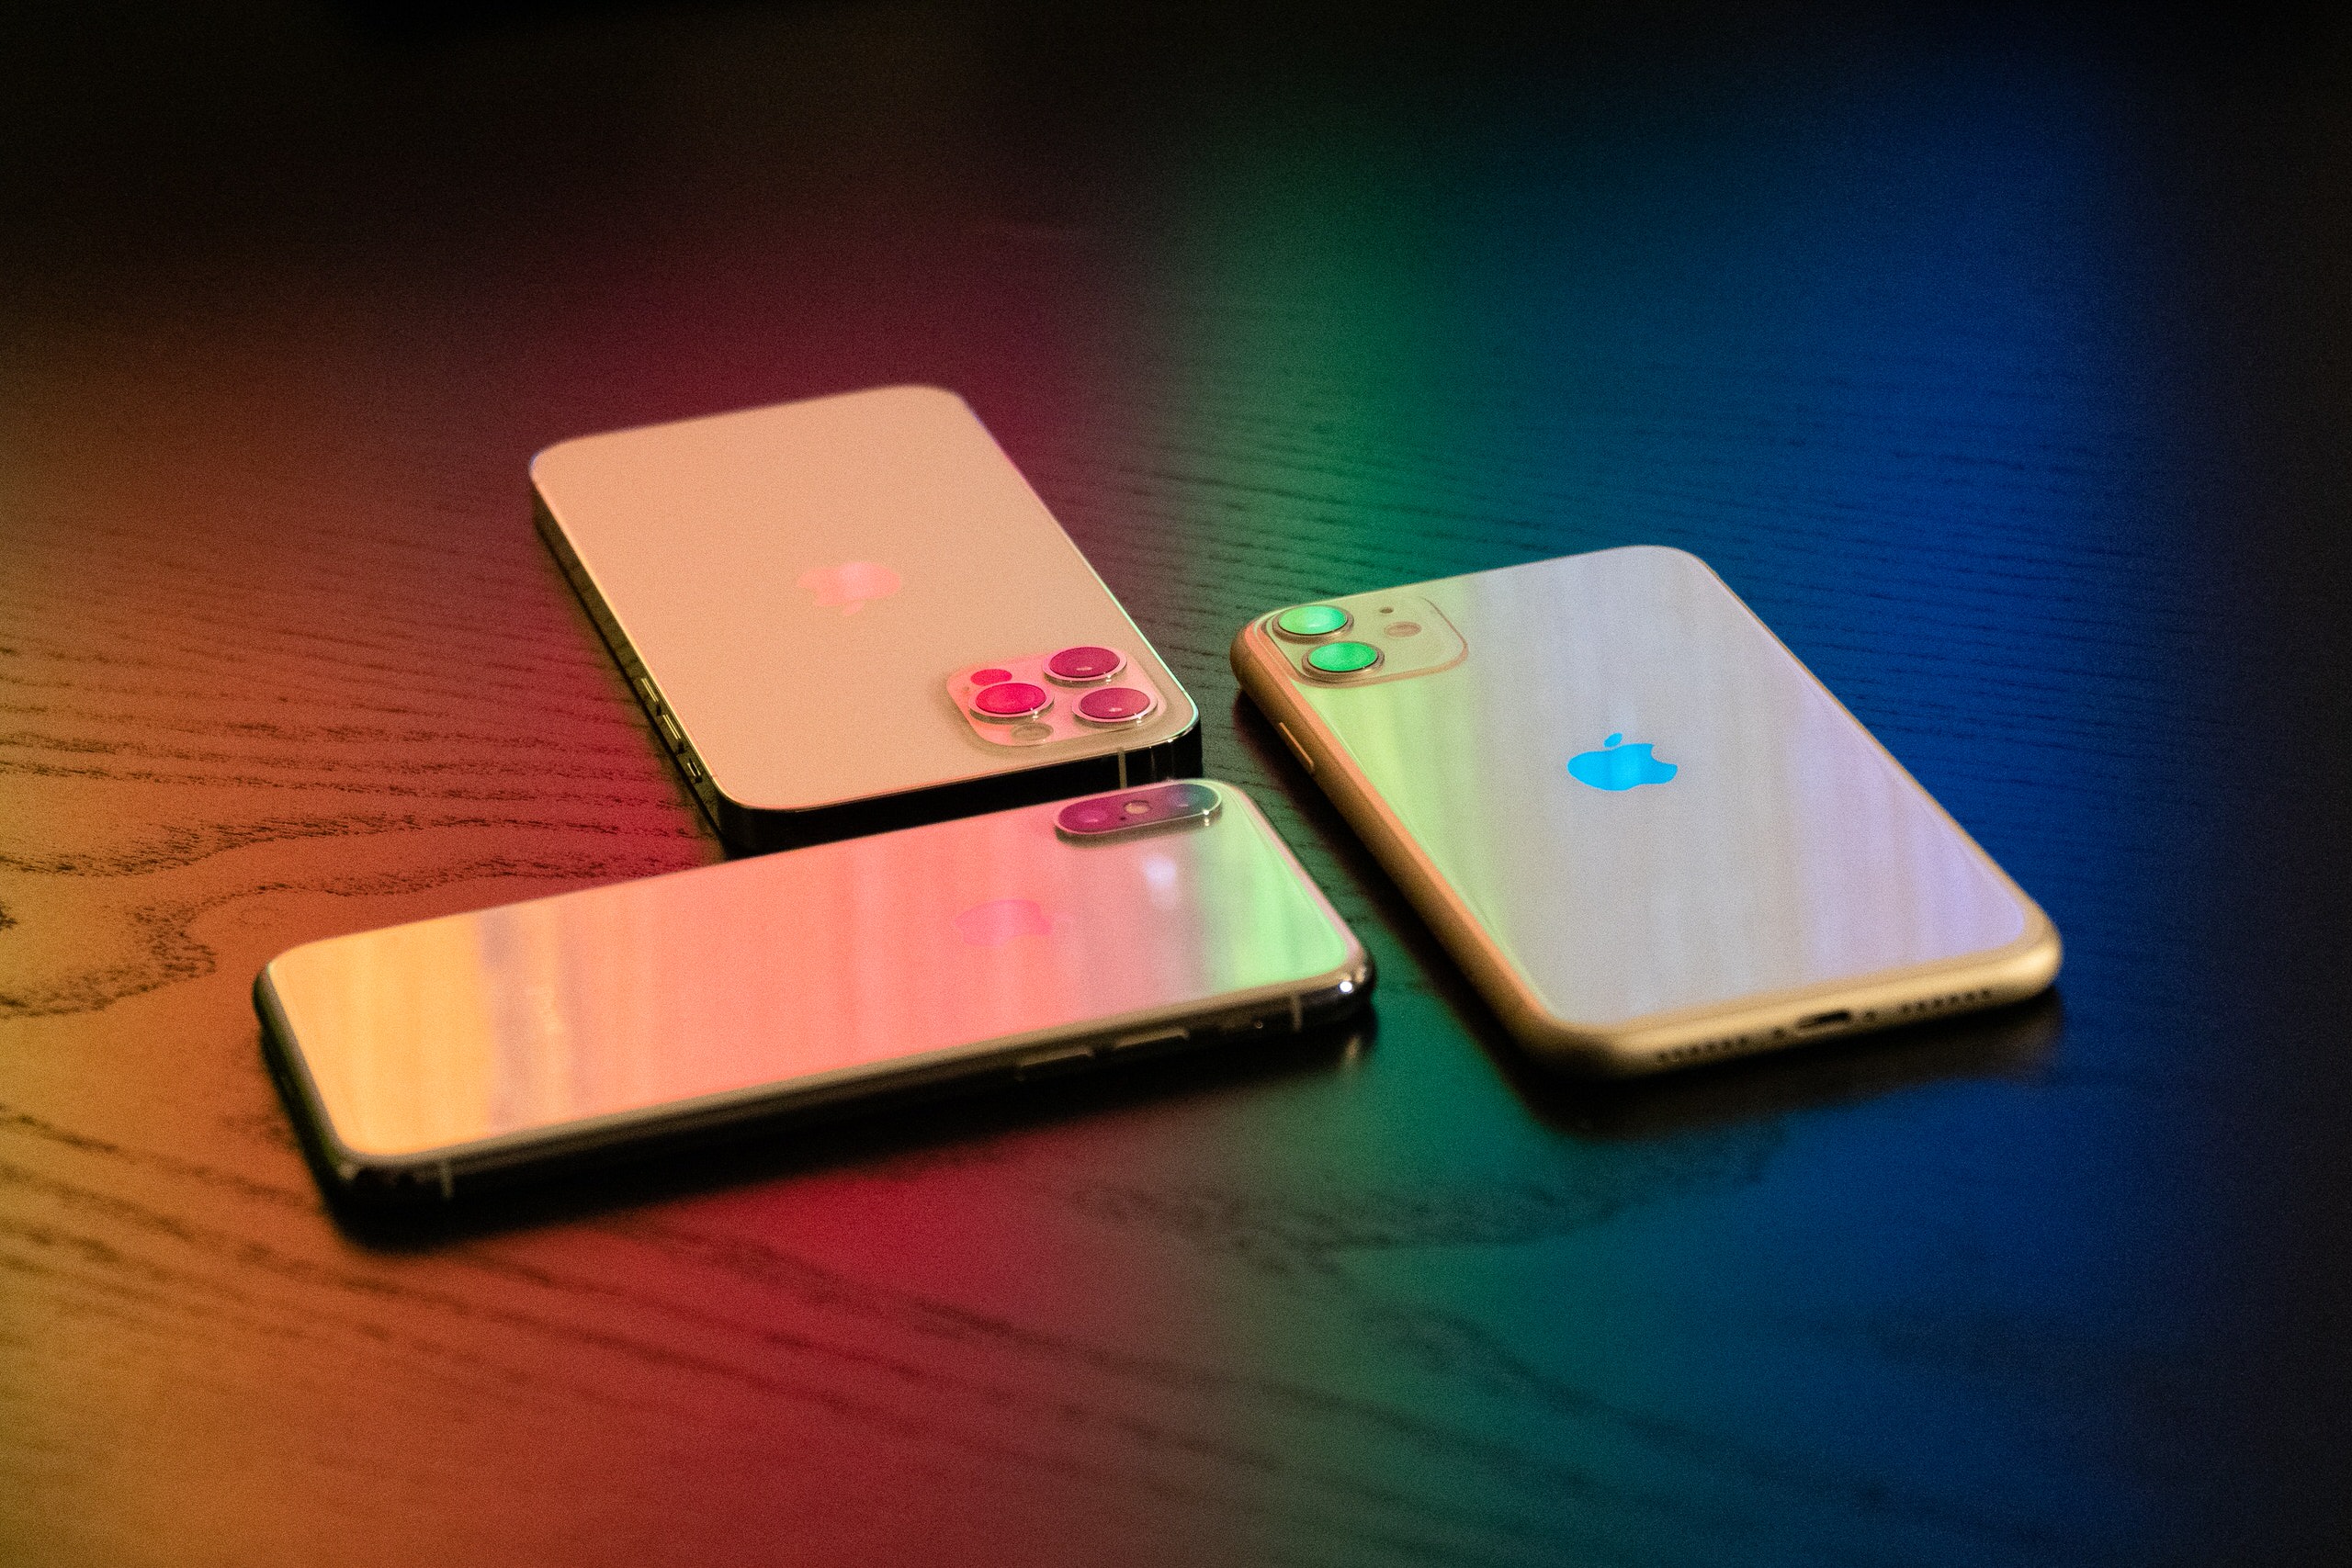 iPhone 13 sẽ có bốn mẫu giống iPhone 12, phiên bản Pro sẽ nâng cấp camera góc siêu rộng